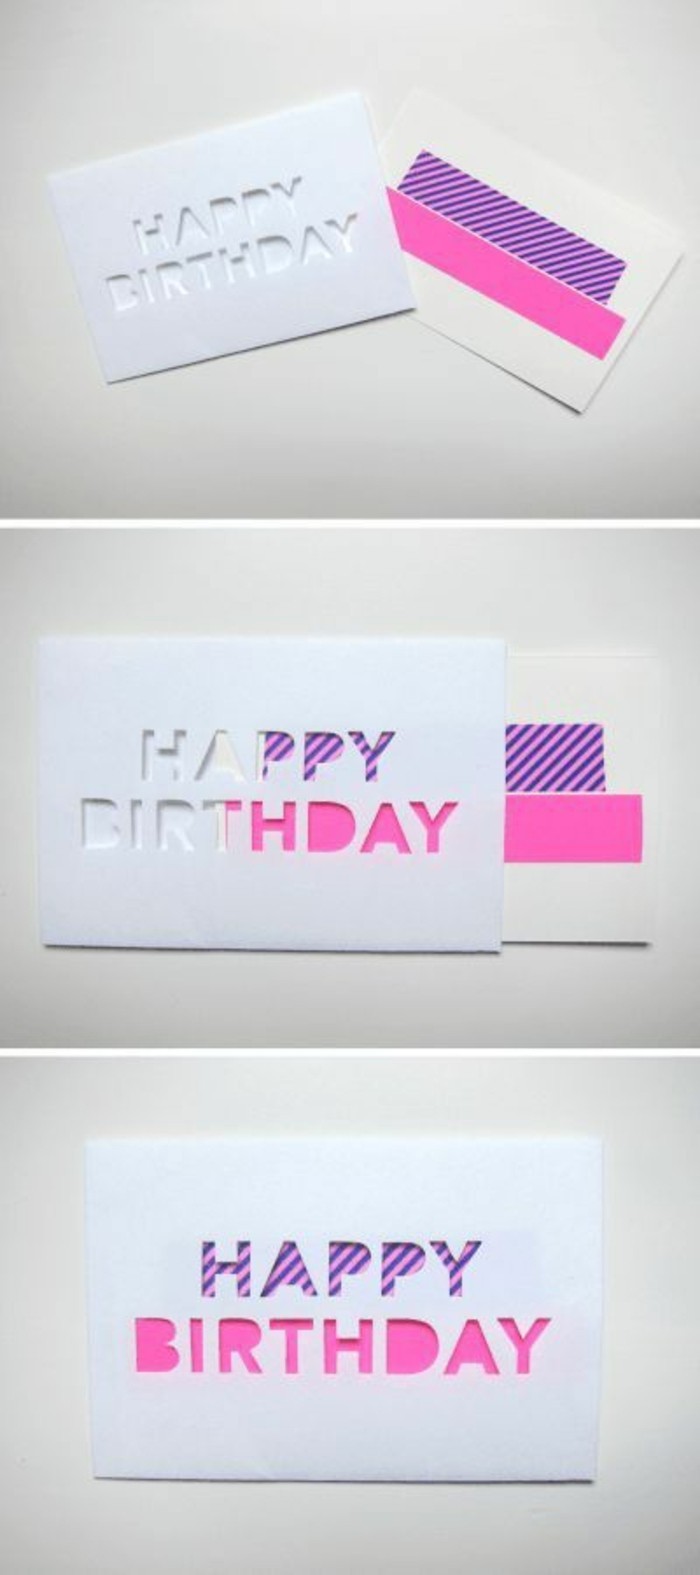 une-idee-de-carte-d-anniversaire-facile-a-realiser-avec-du-ruban-adhesif-decoratif